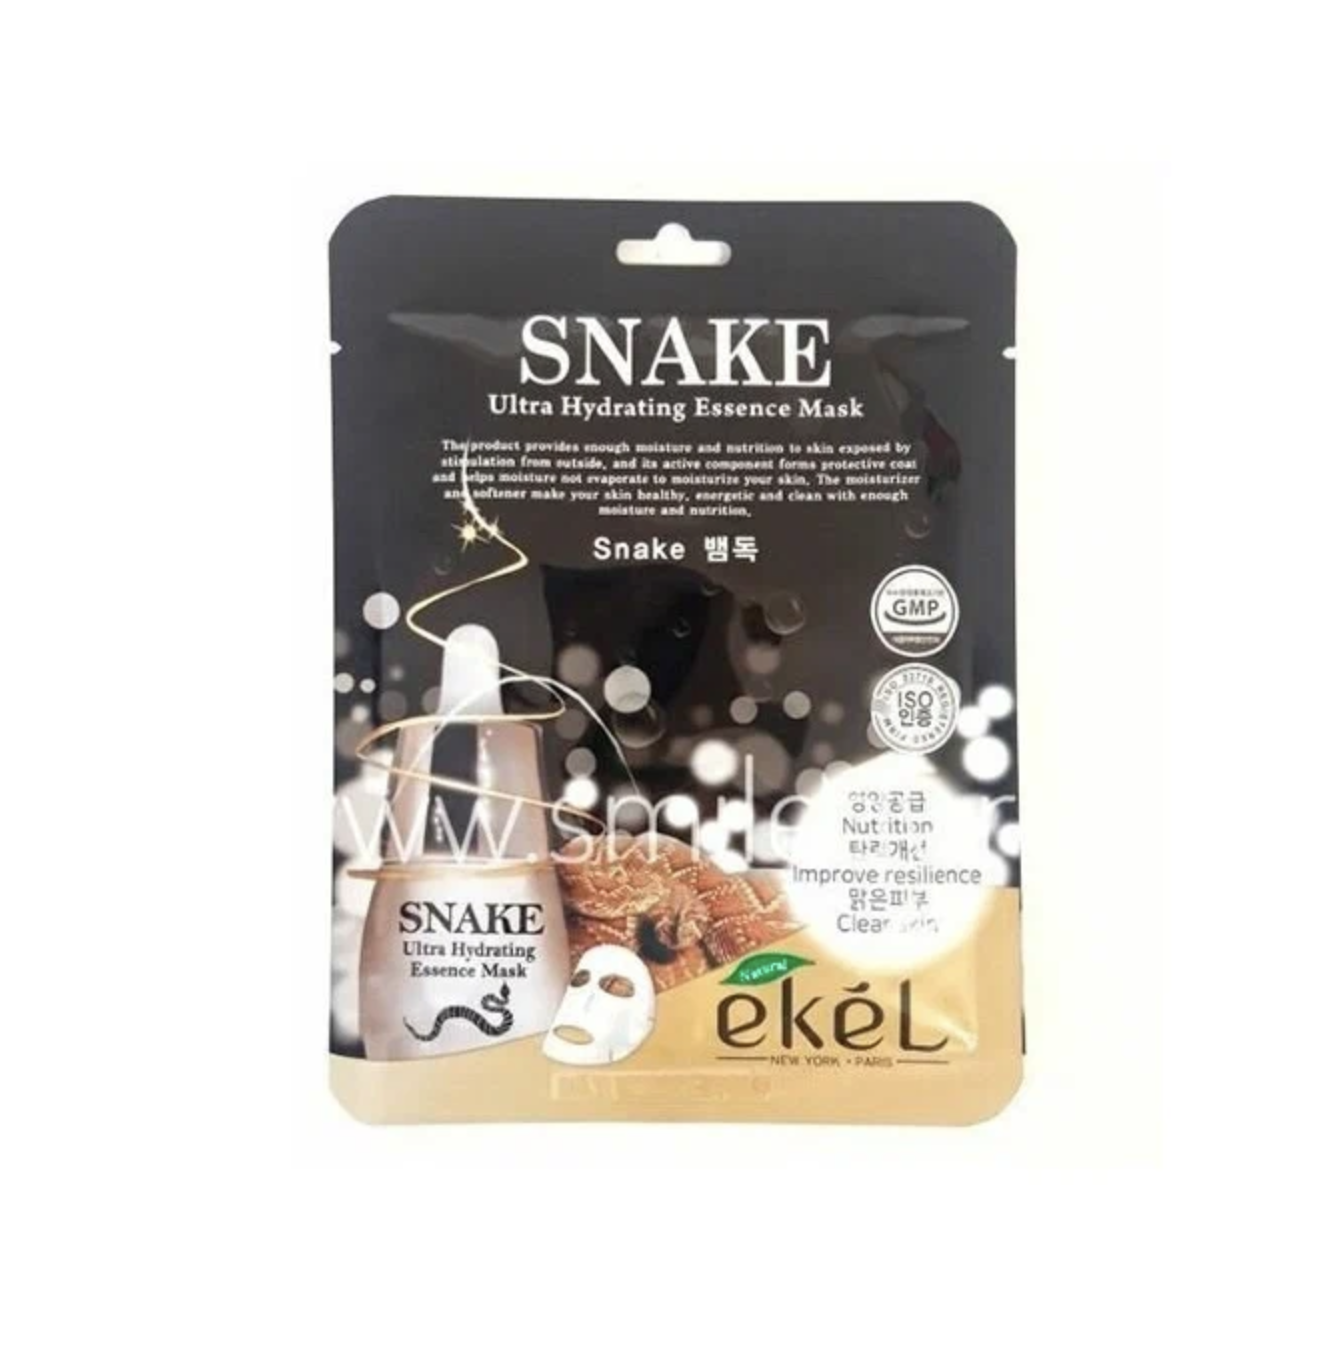 Тканевая маска для лица Экель / Ekel - Snake Ultra Hydrating Essence пептид змеи 25 г asiakiss маска для лица тканевая со змеиным пептидом 25